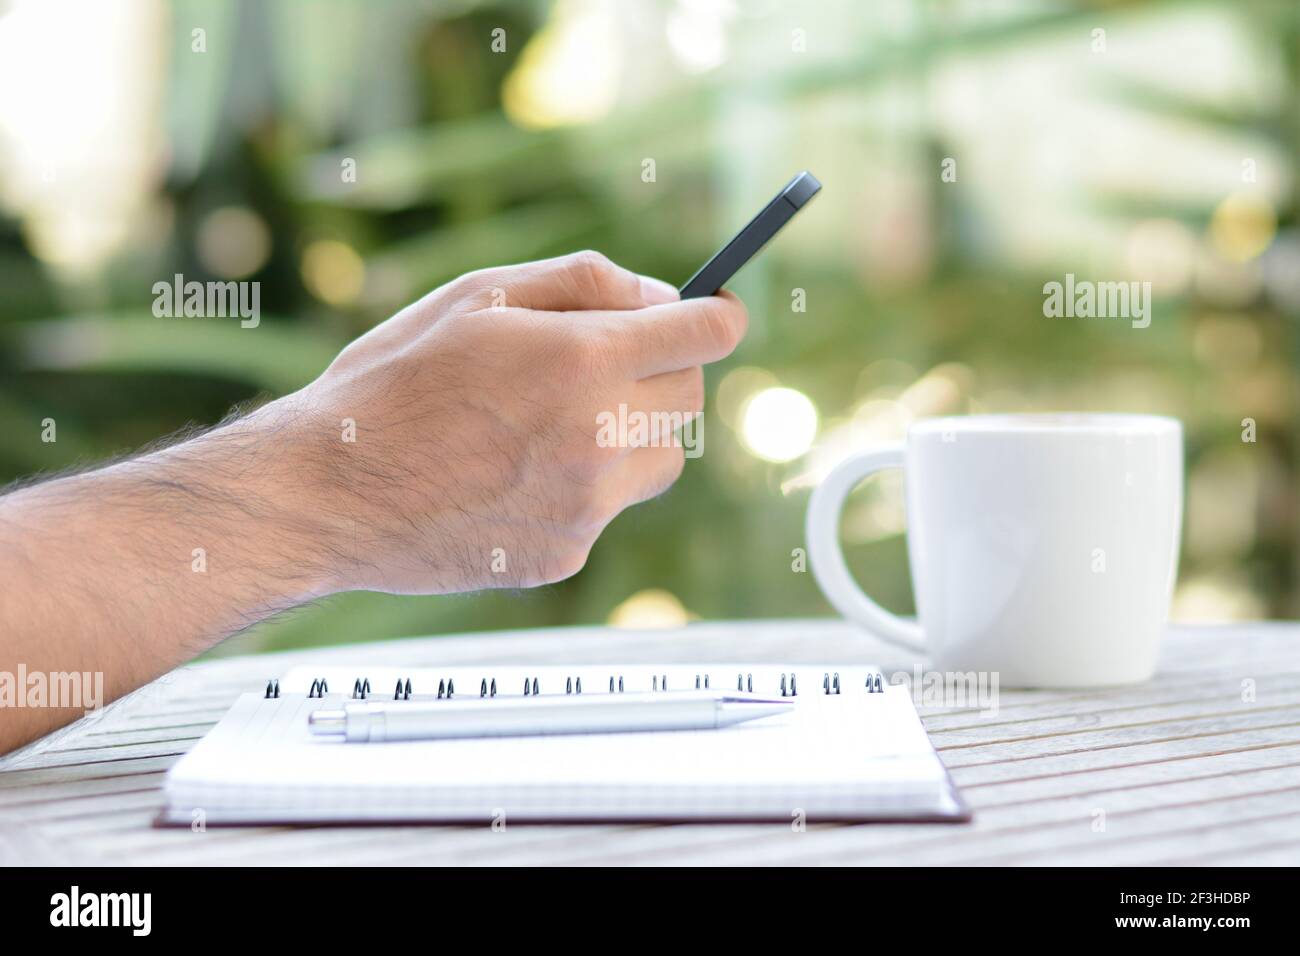 Main à l'aide d'un smartphone avec une tasse à café et un ordinateur portable la table - main focalisée Banque D'Images